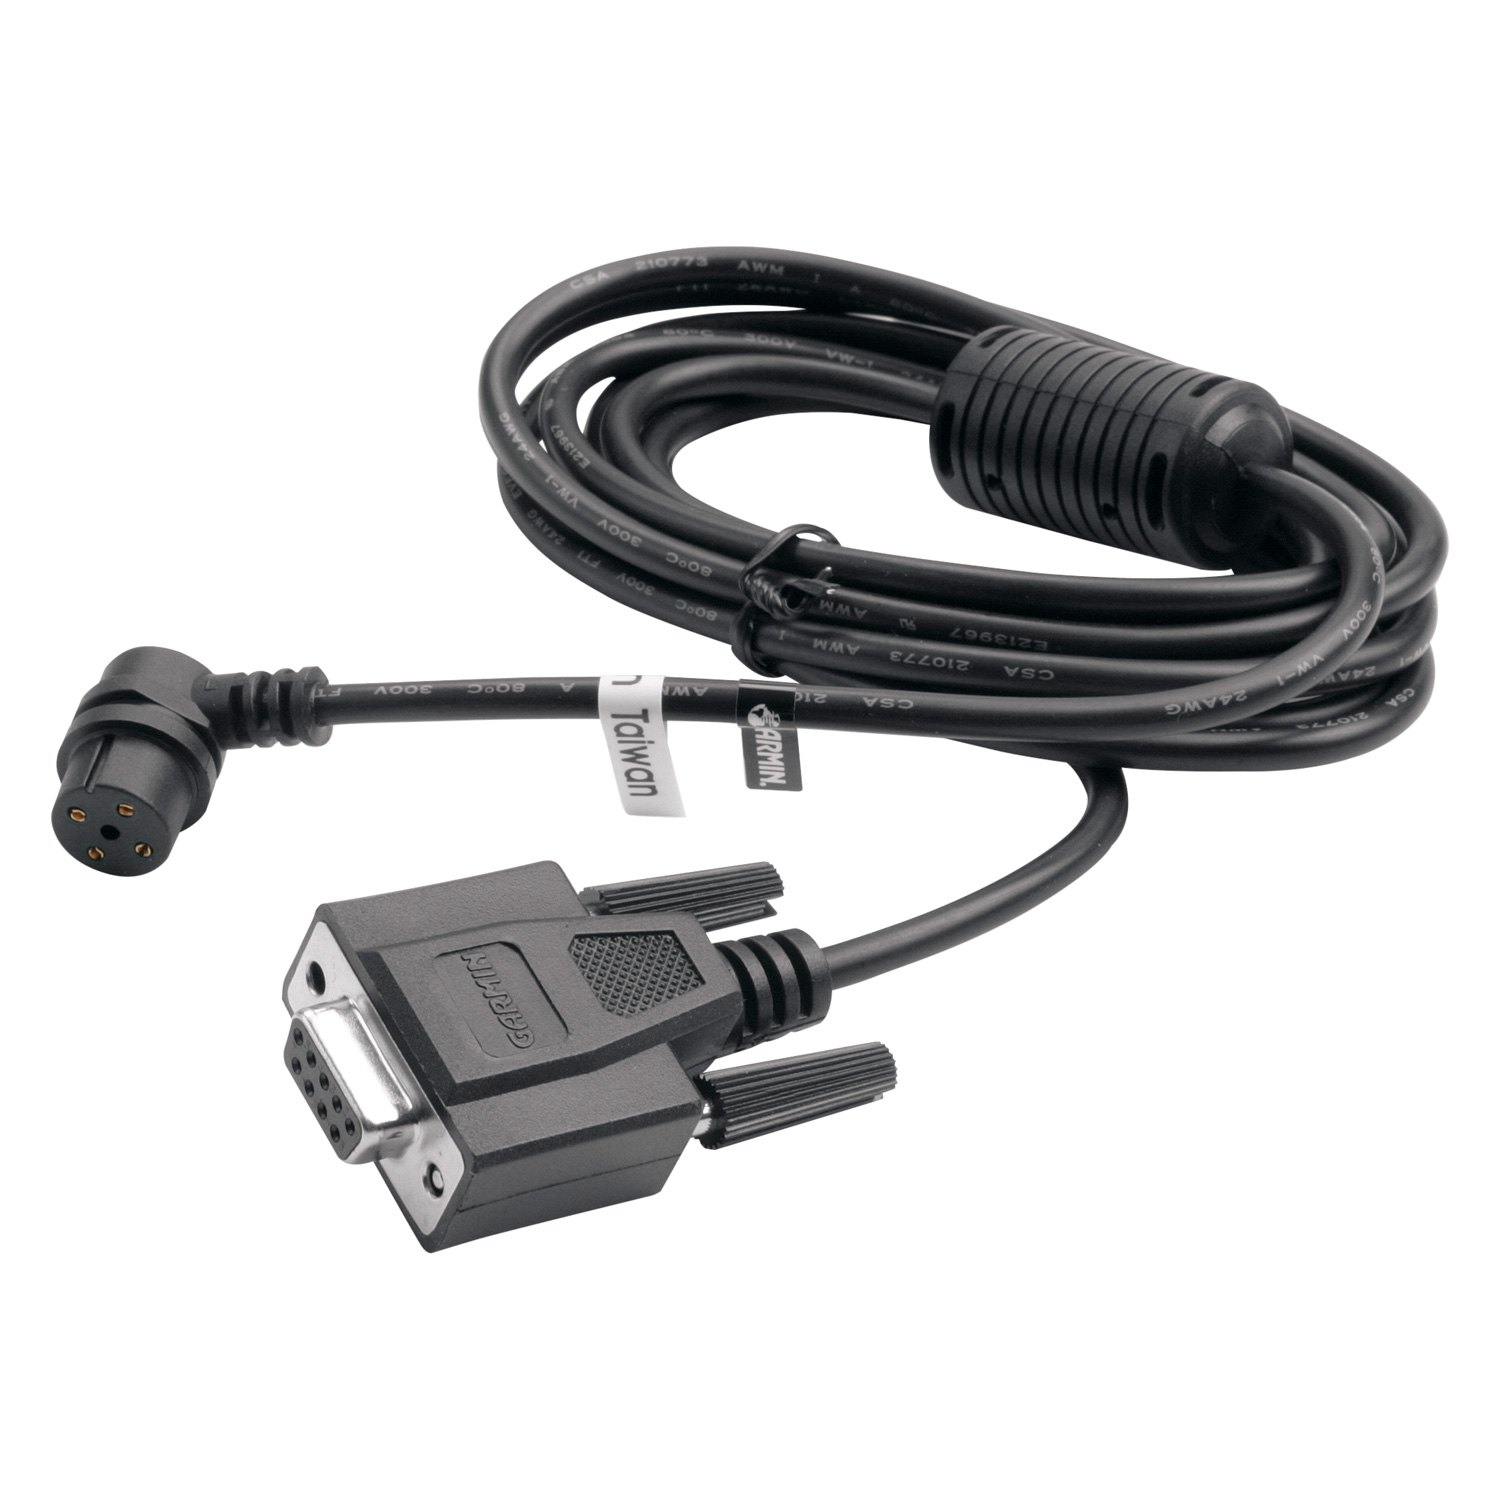 Garmin PC Interface Cable for Garmin GPS Units-010-10141-00 